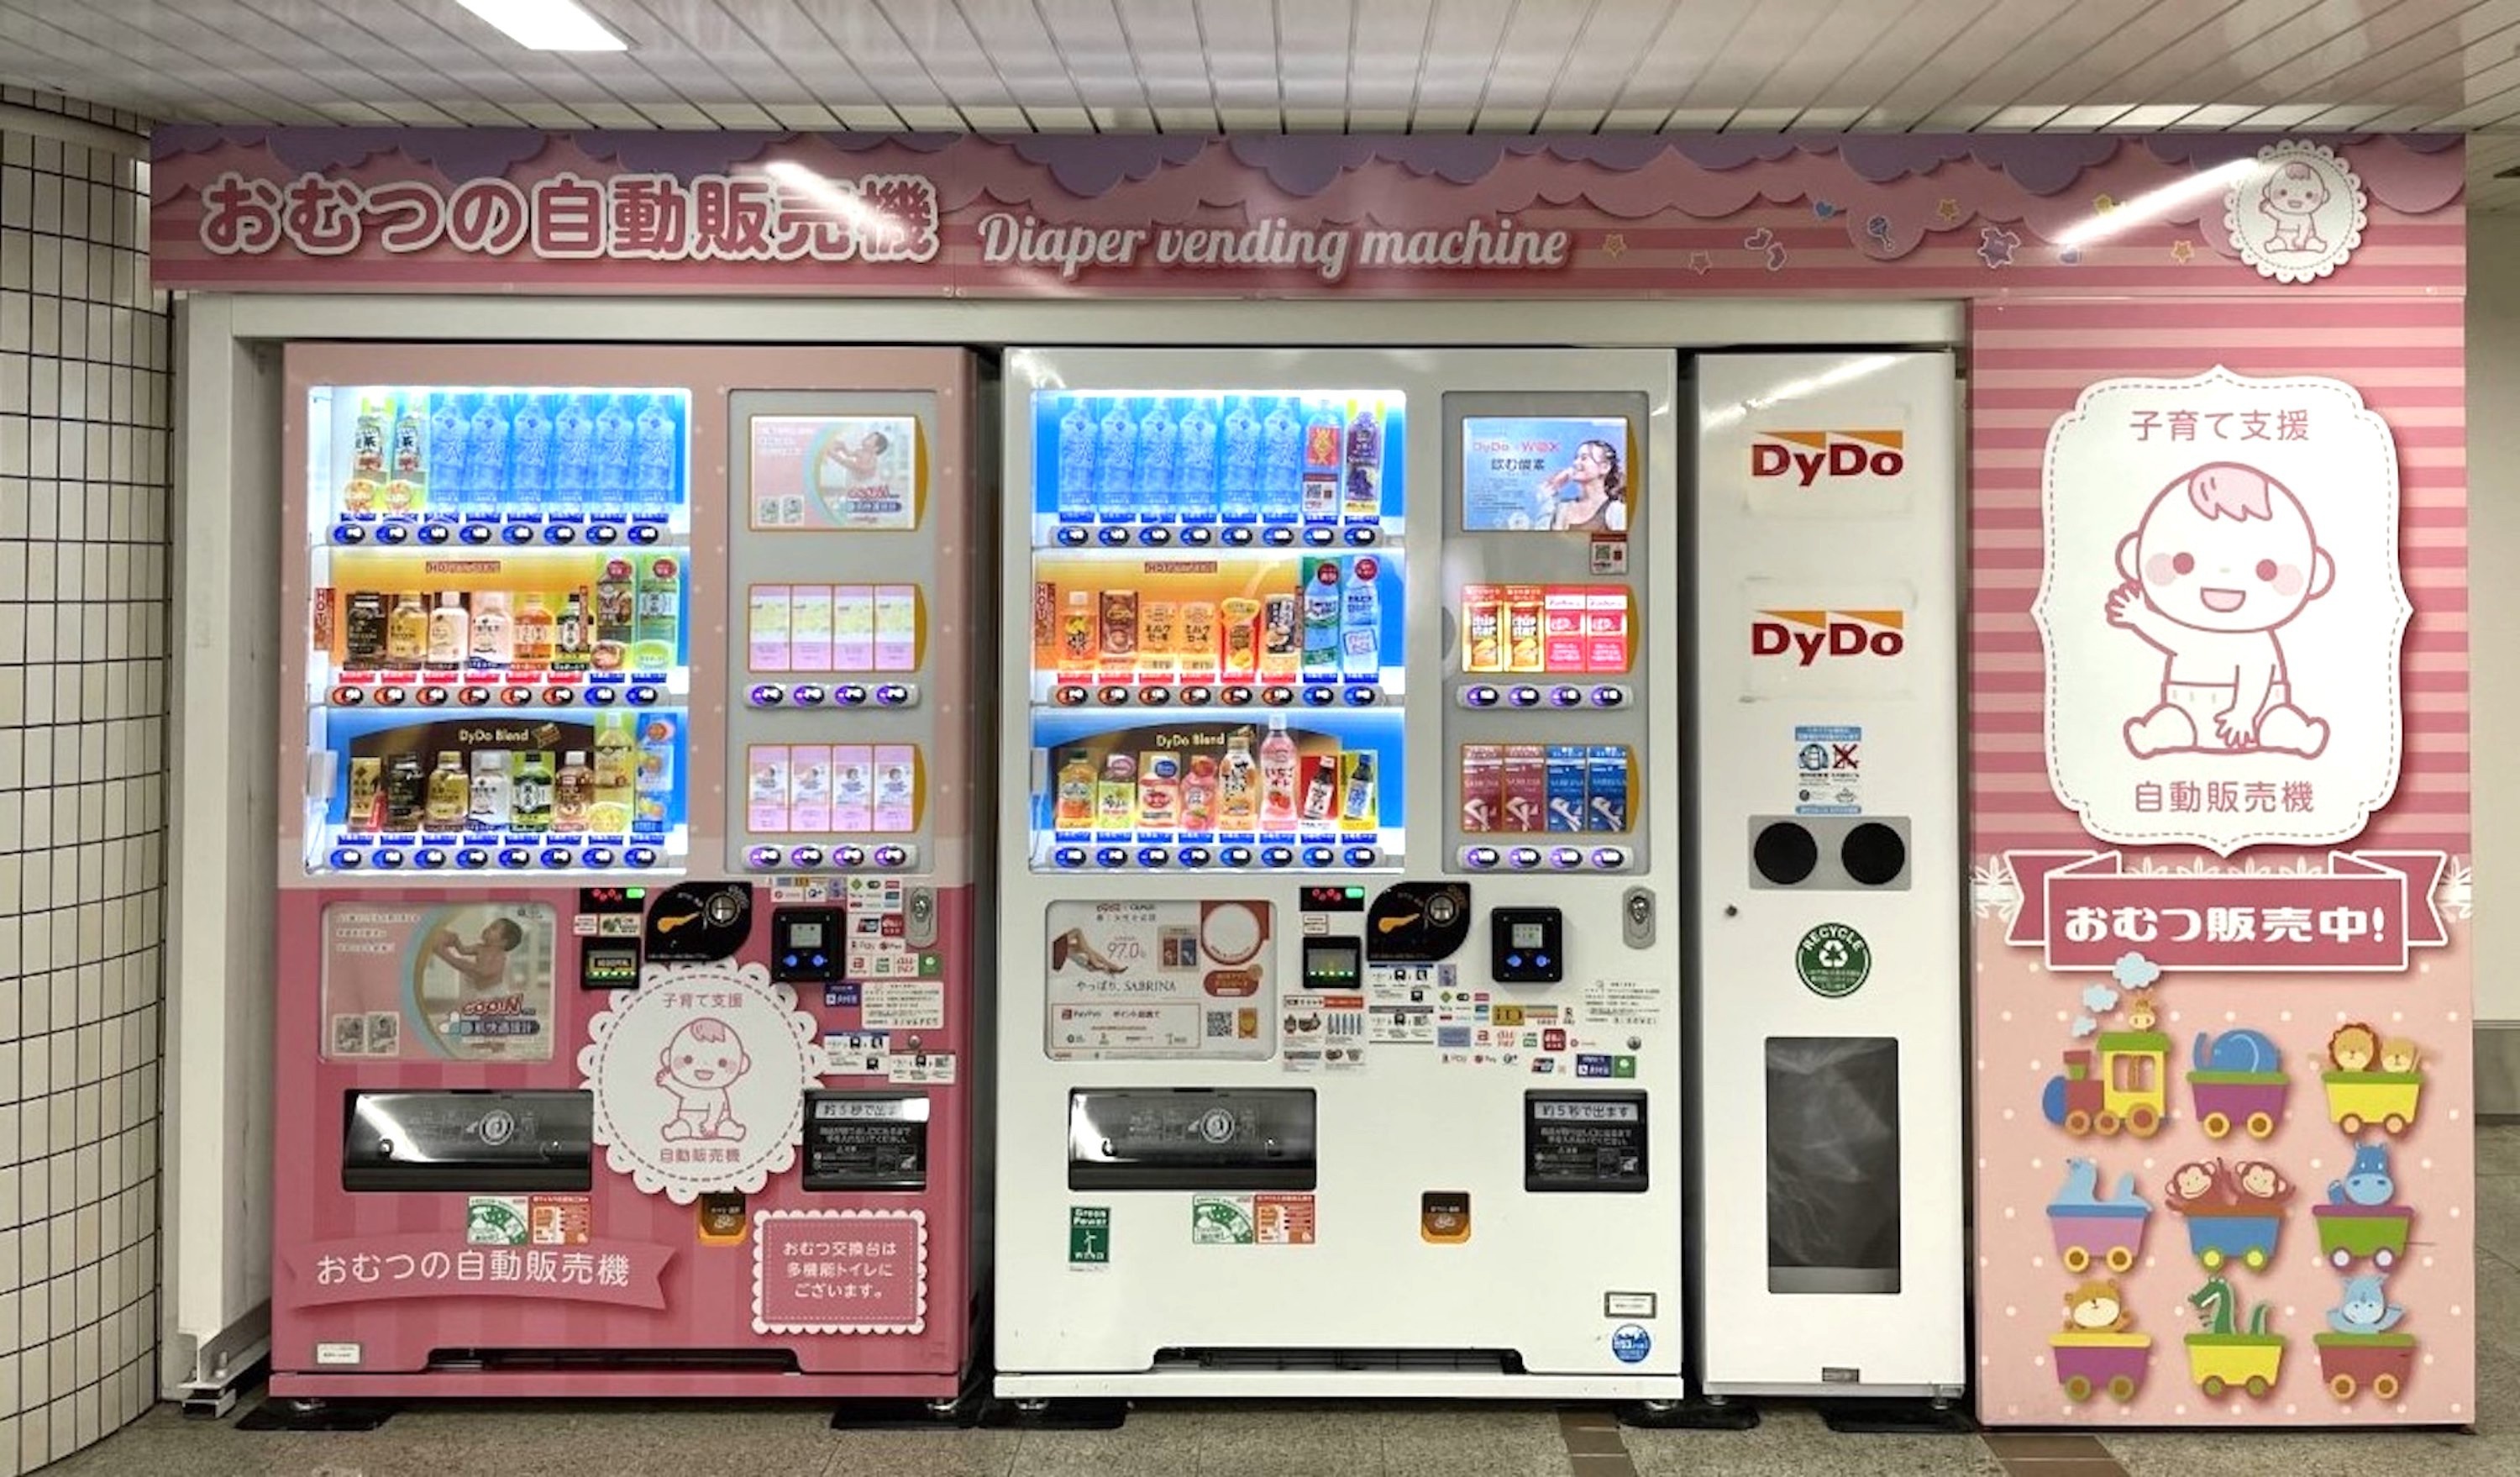 「ベビー用紙おむつ自動販売機」(Osaka Metro なんば駅)。2022年4月23日に子育て世代の人たちが紙おむつの心配をすることなく外出できるように、ベビー用紙おむつの小パック(2枚入り)を購入できる飲料とのコラボレーション